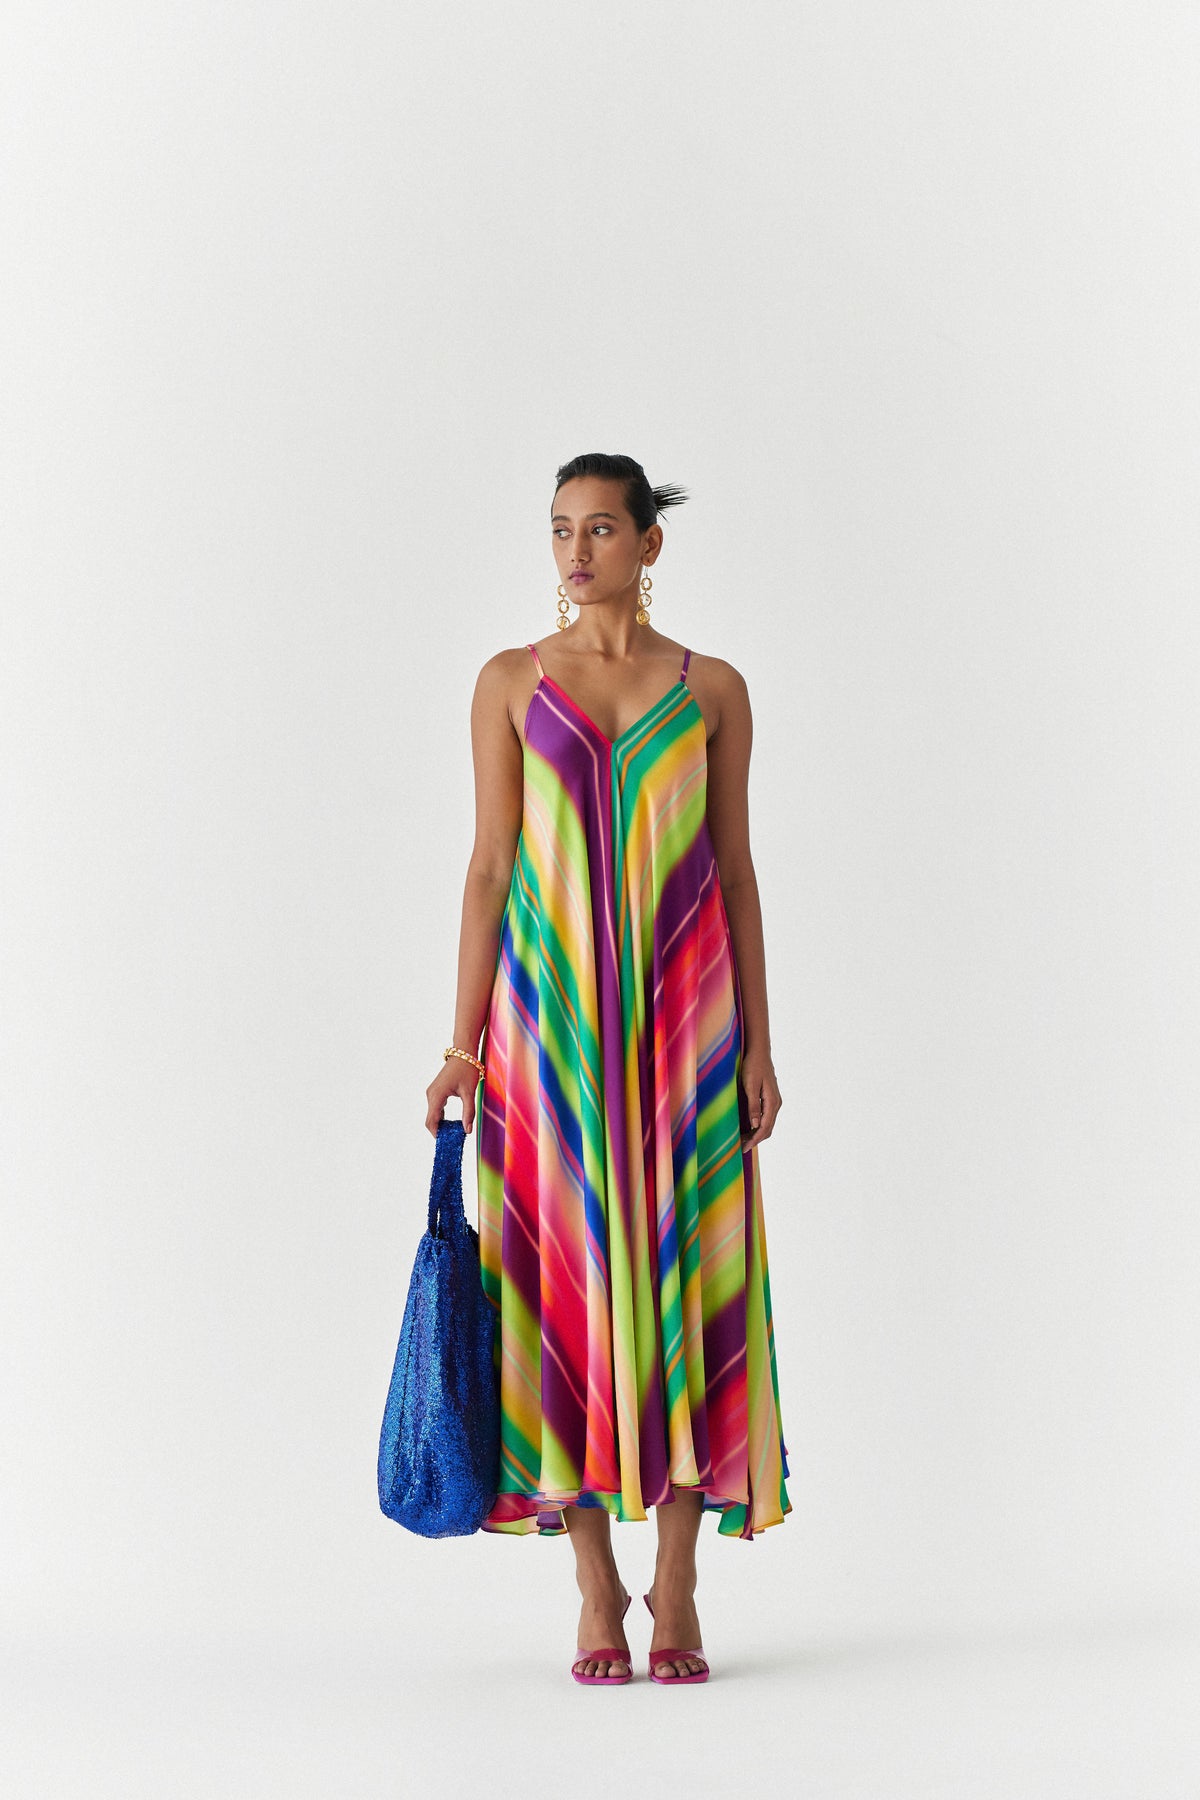 Rainbow Strappy Dress